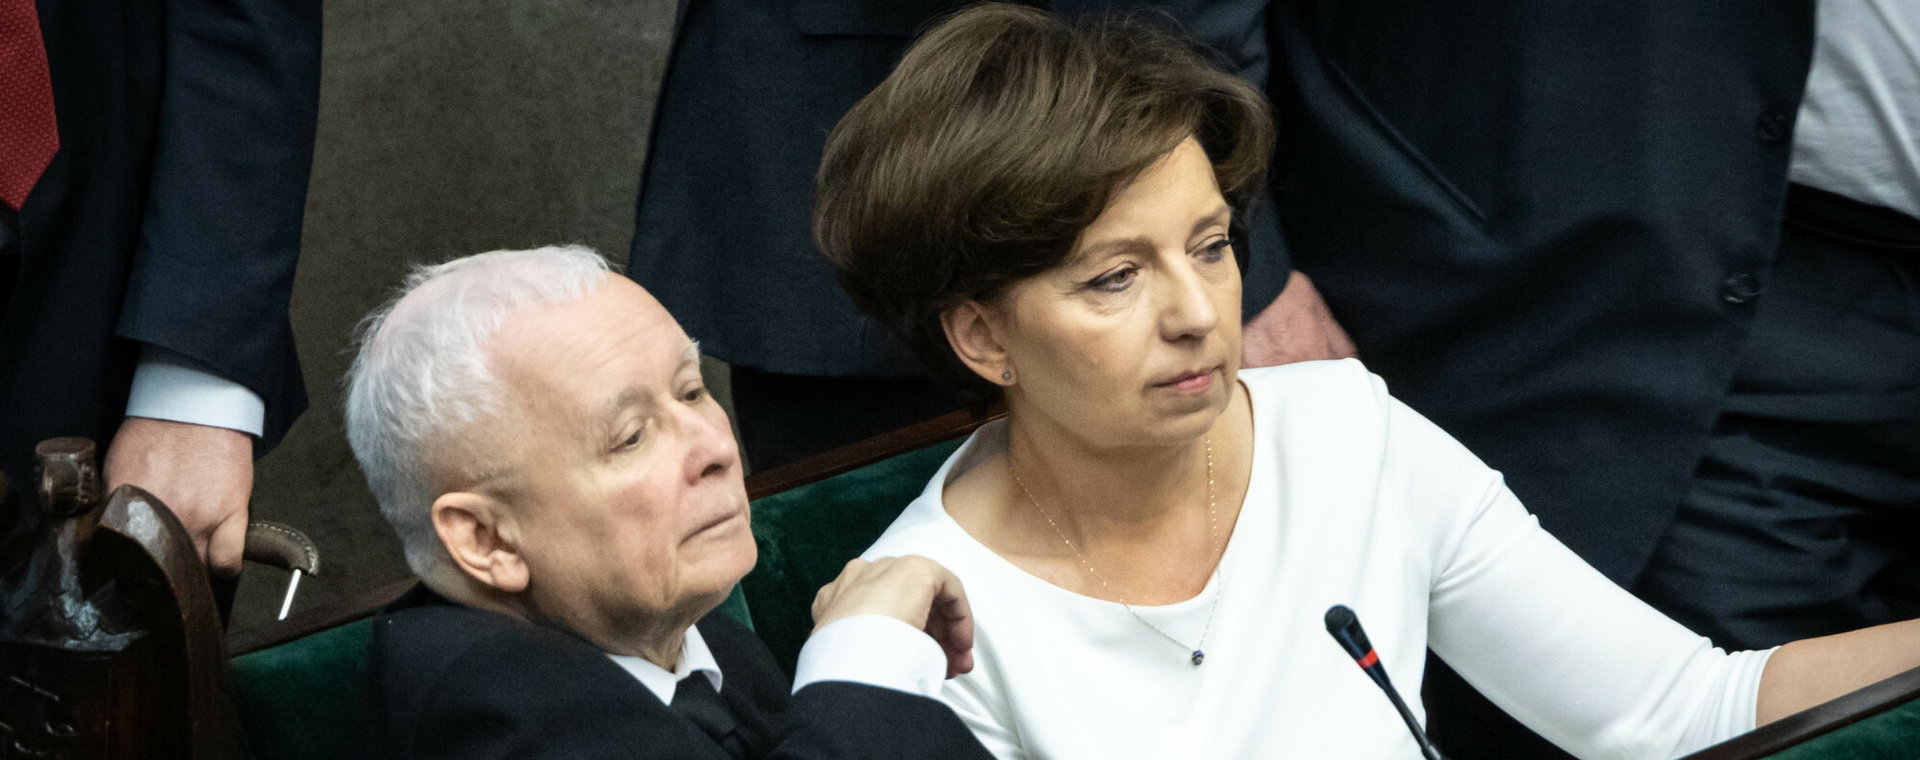 Sejm nie zgodził się na odrzucenie przepisów o tzw. emeryturze europejskiej. Na zdjęciu Marlena Maląg, minister rodziny i polityki społecznej, oraz Jarosław Kaczyński, wicepremier, szef PiS